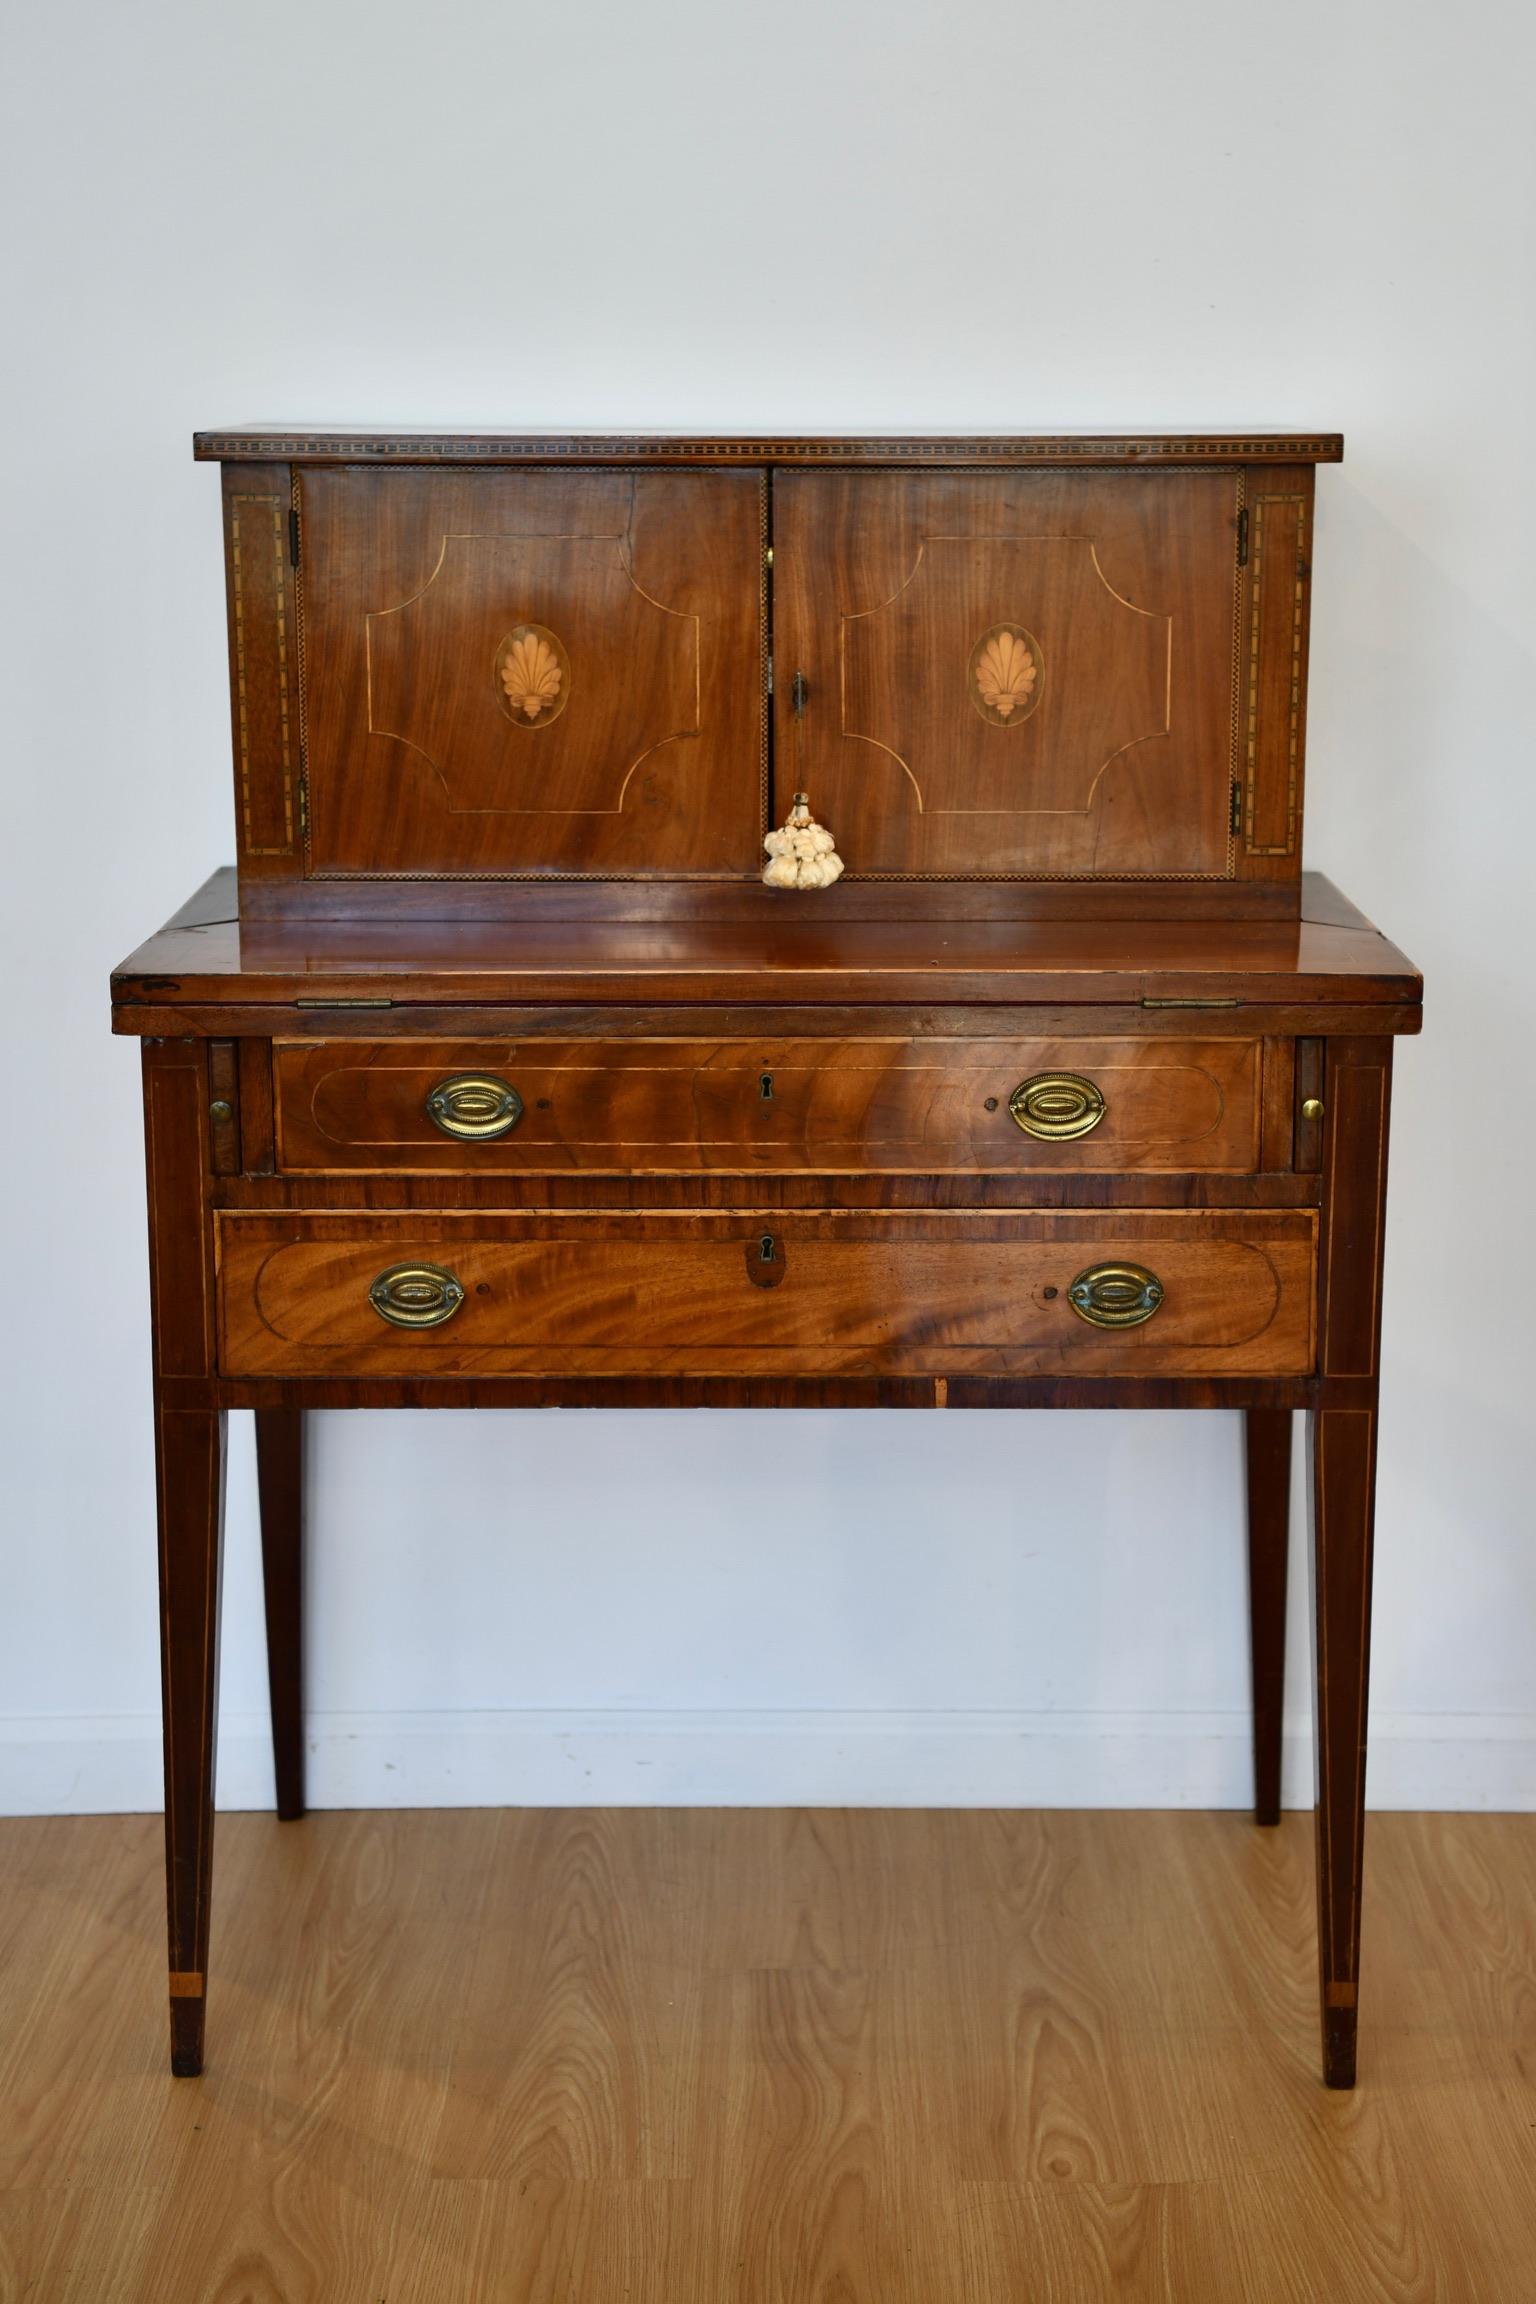 Antique American mahogany Sheraton secretary desk. Wear to felt on desk, pictured. Dimensions: 47